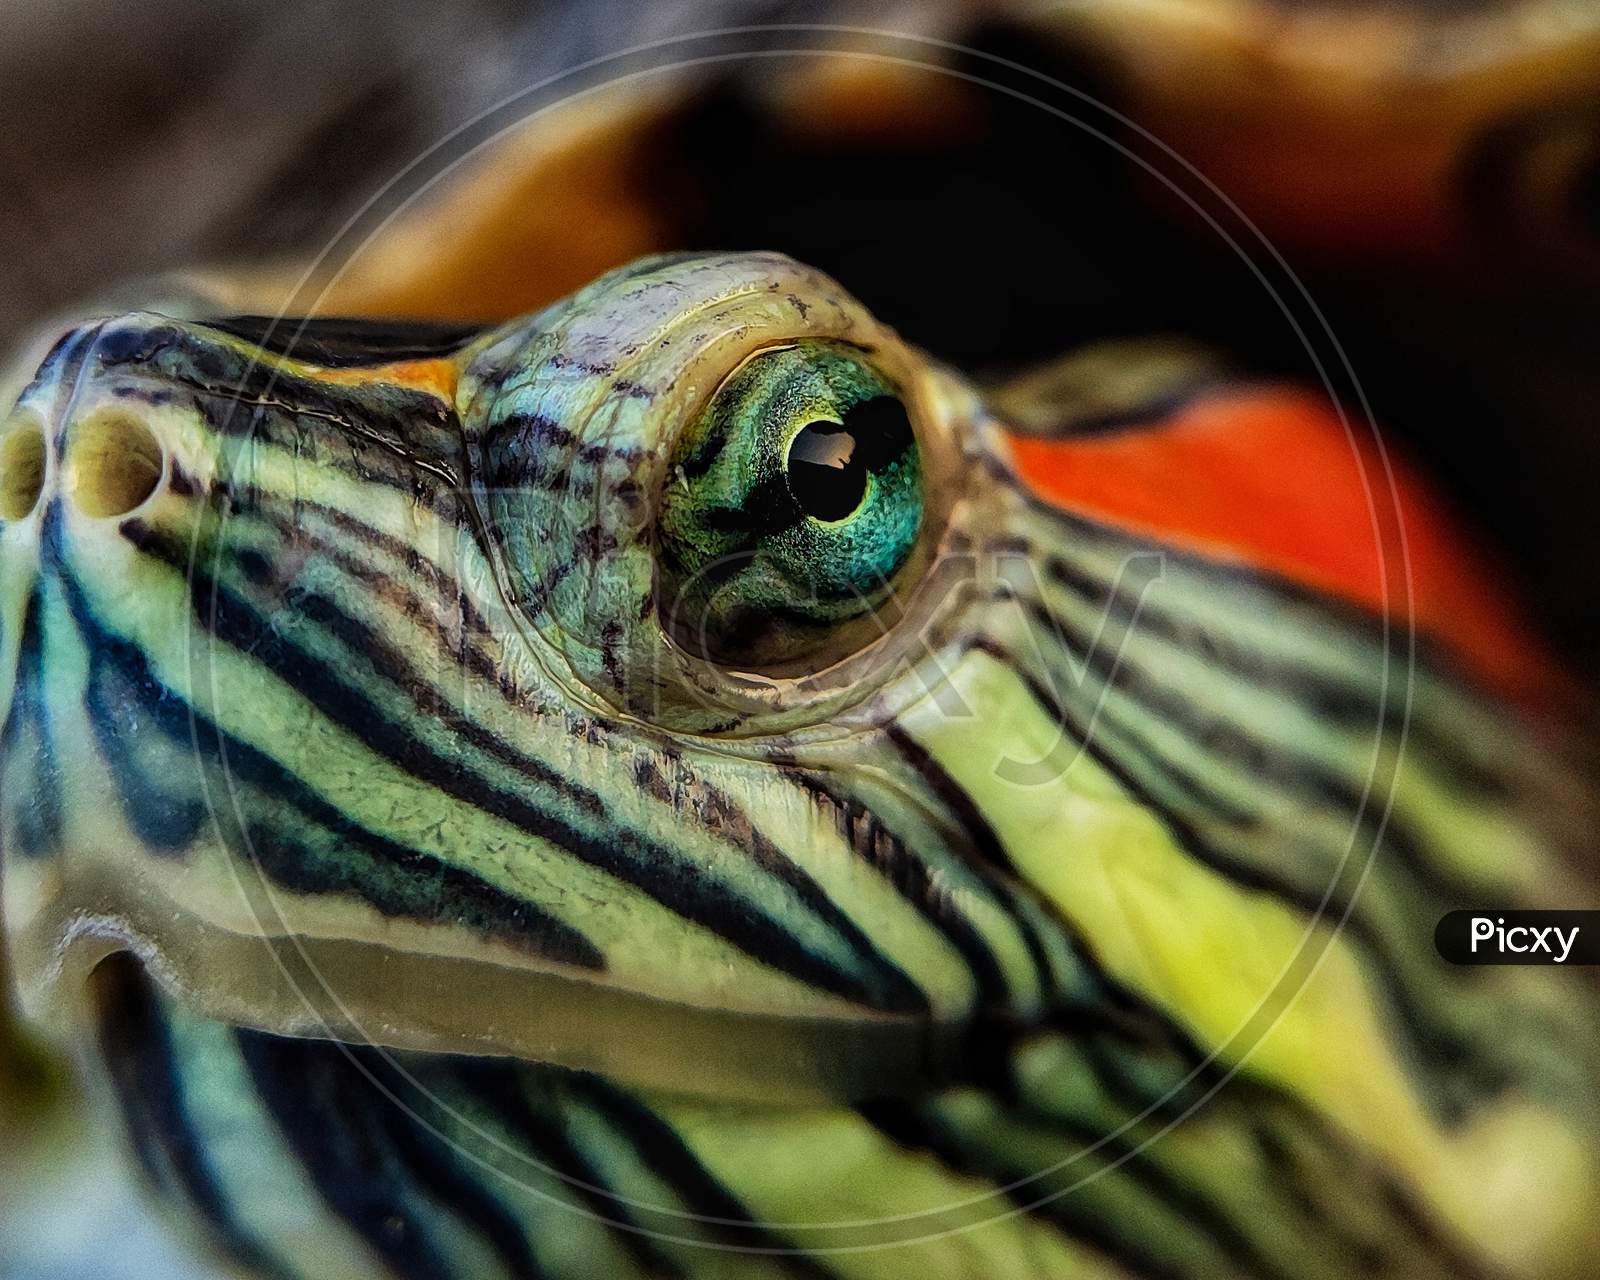 Turtle macro photography